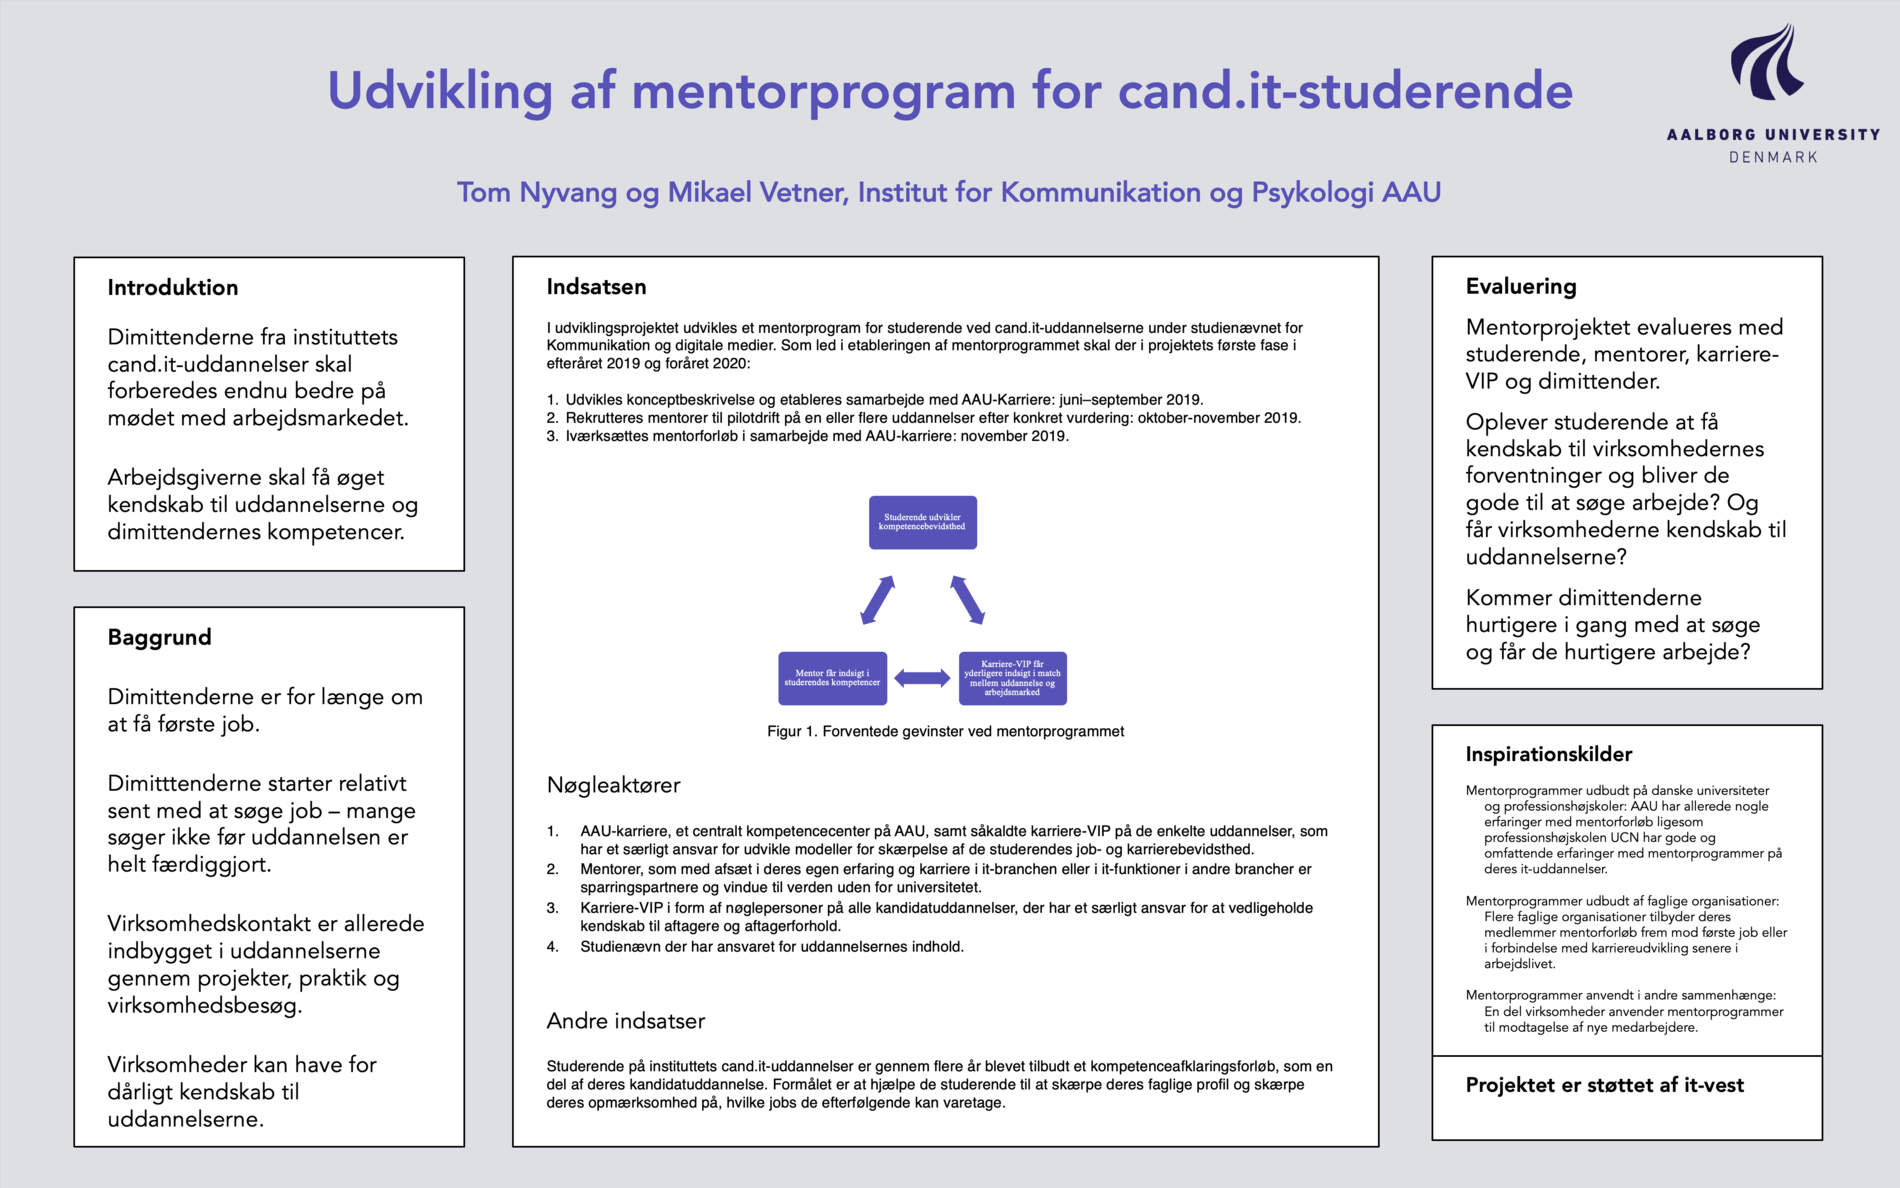 Link til pdf med poster for Udvikling af mentorprogram for cand.it.-studerende, AAU